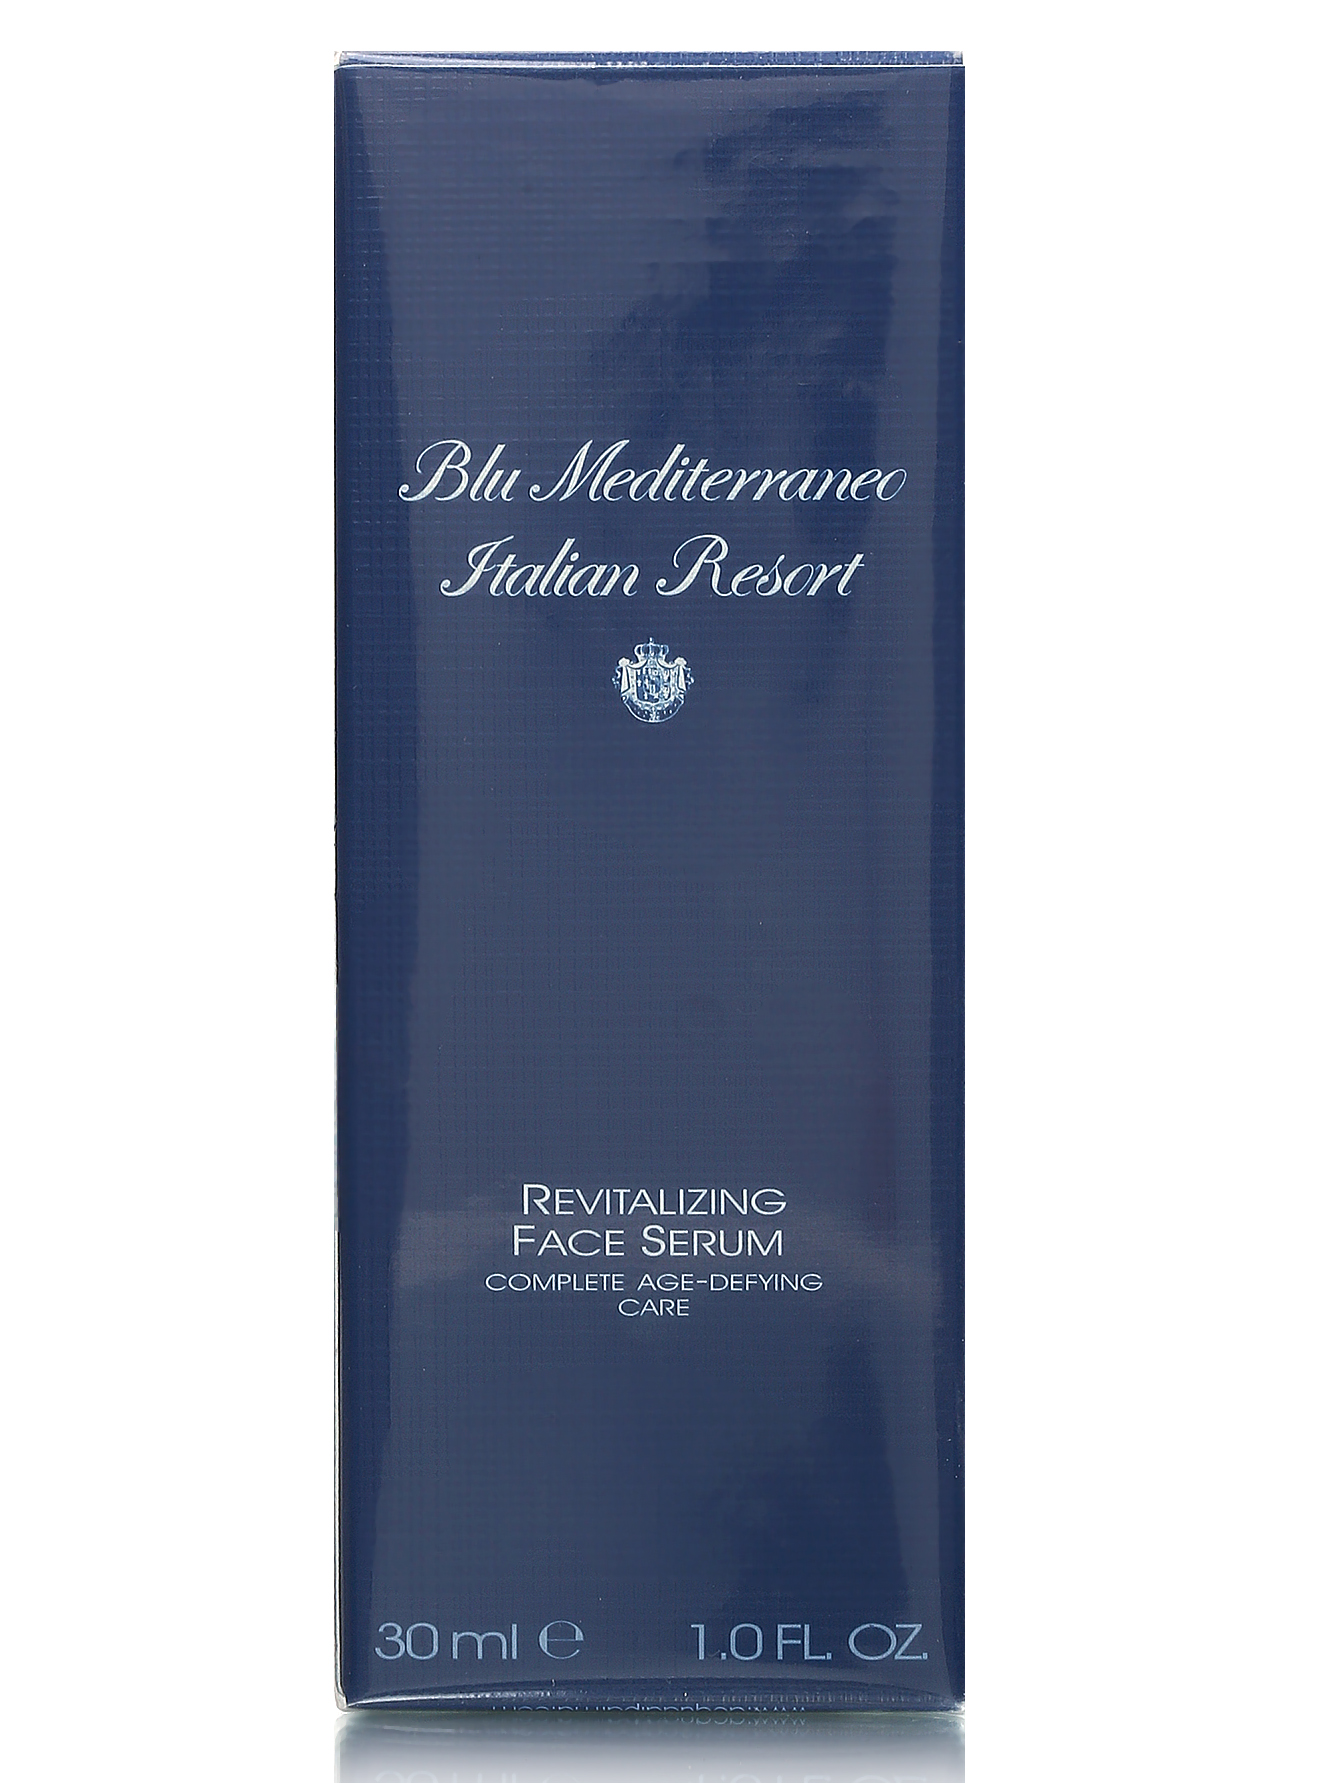  Антивозрастная сыворотка для лица - Blu Mediterraneo, 30ml - Модель Общий вид